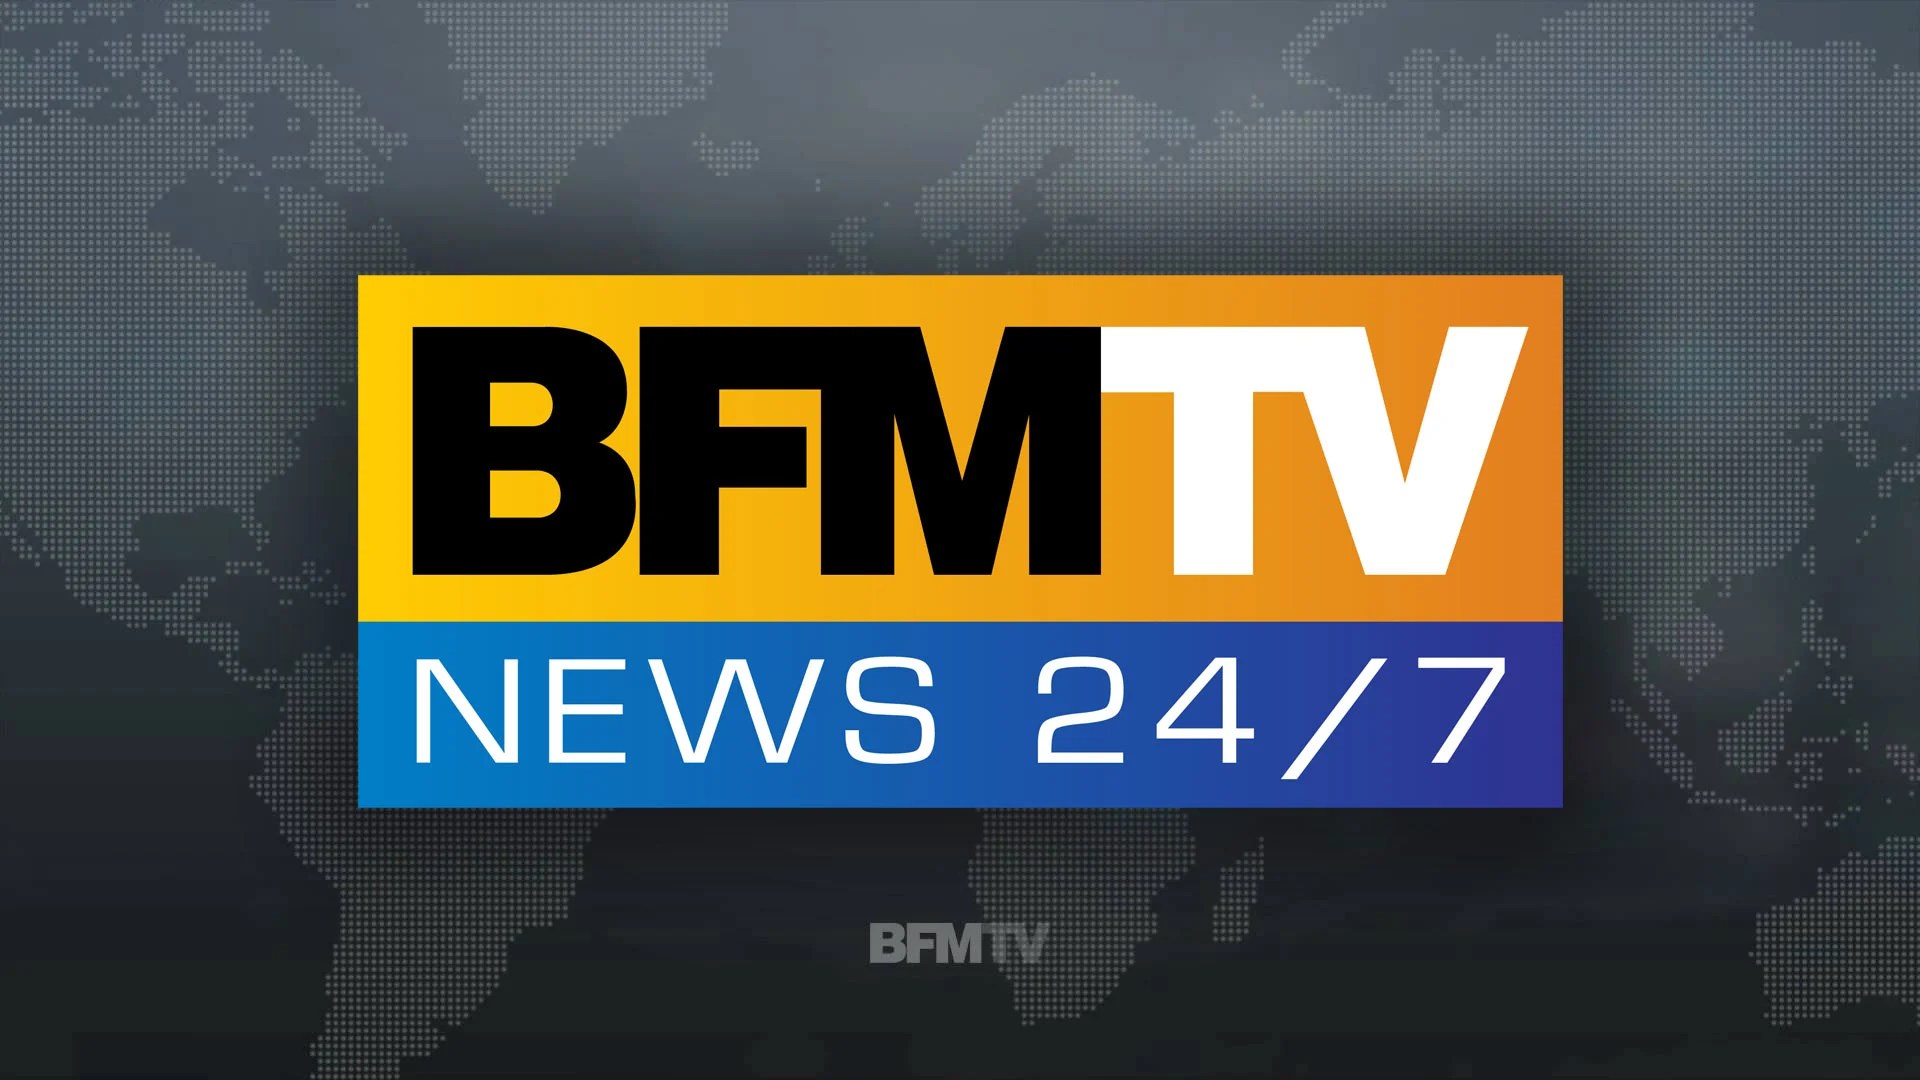 BFM TV n’a plus le droit de parler publiquement de son litige avec Free